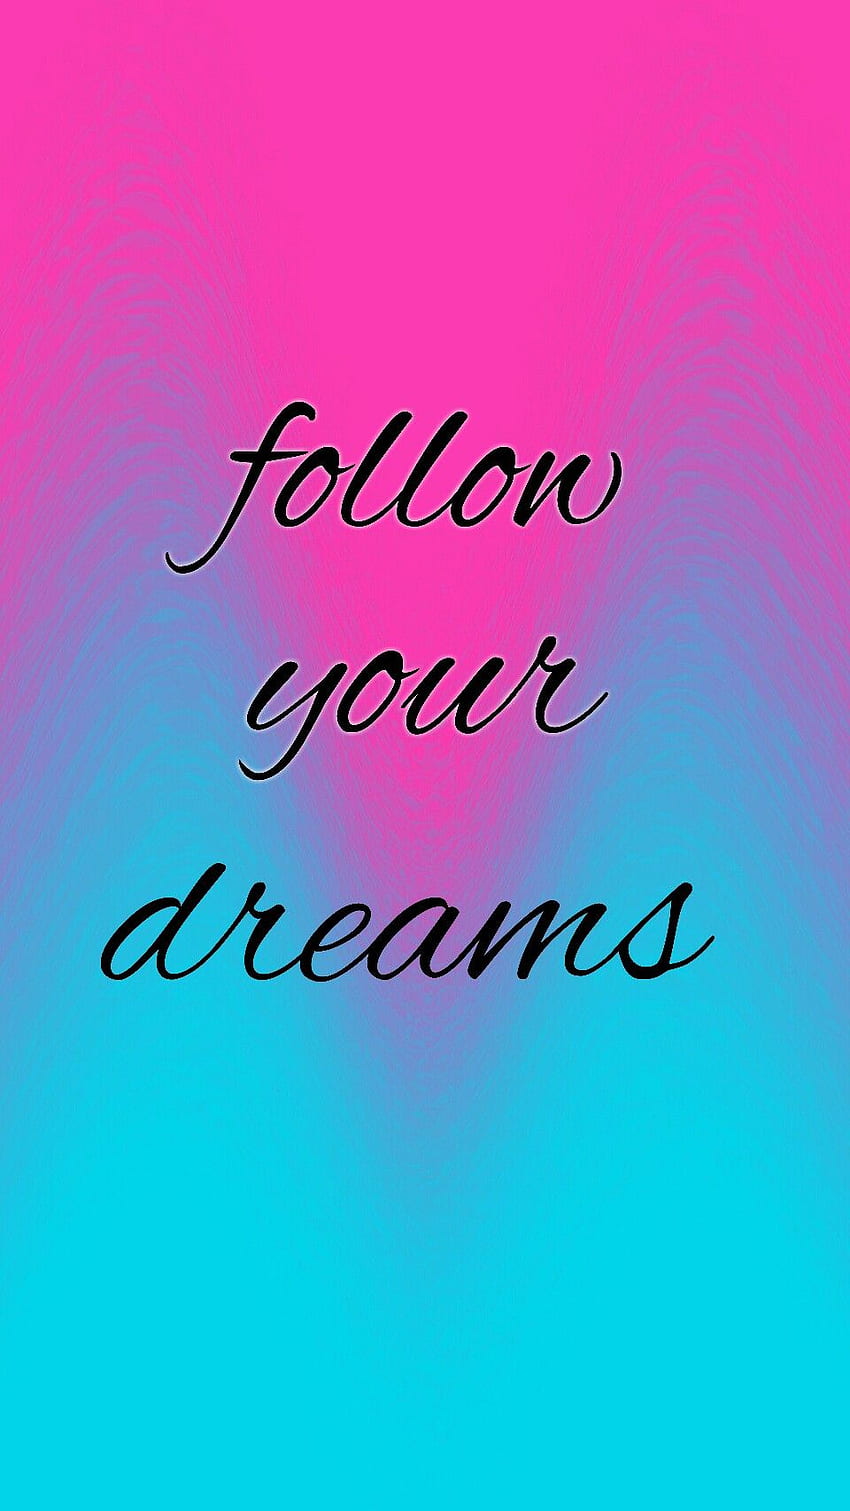 Rosa y azul (Follow Your Dreams) motivacional fondo de pantalla del teléfono